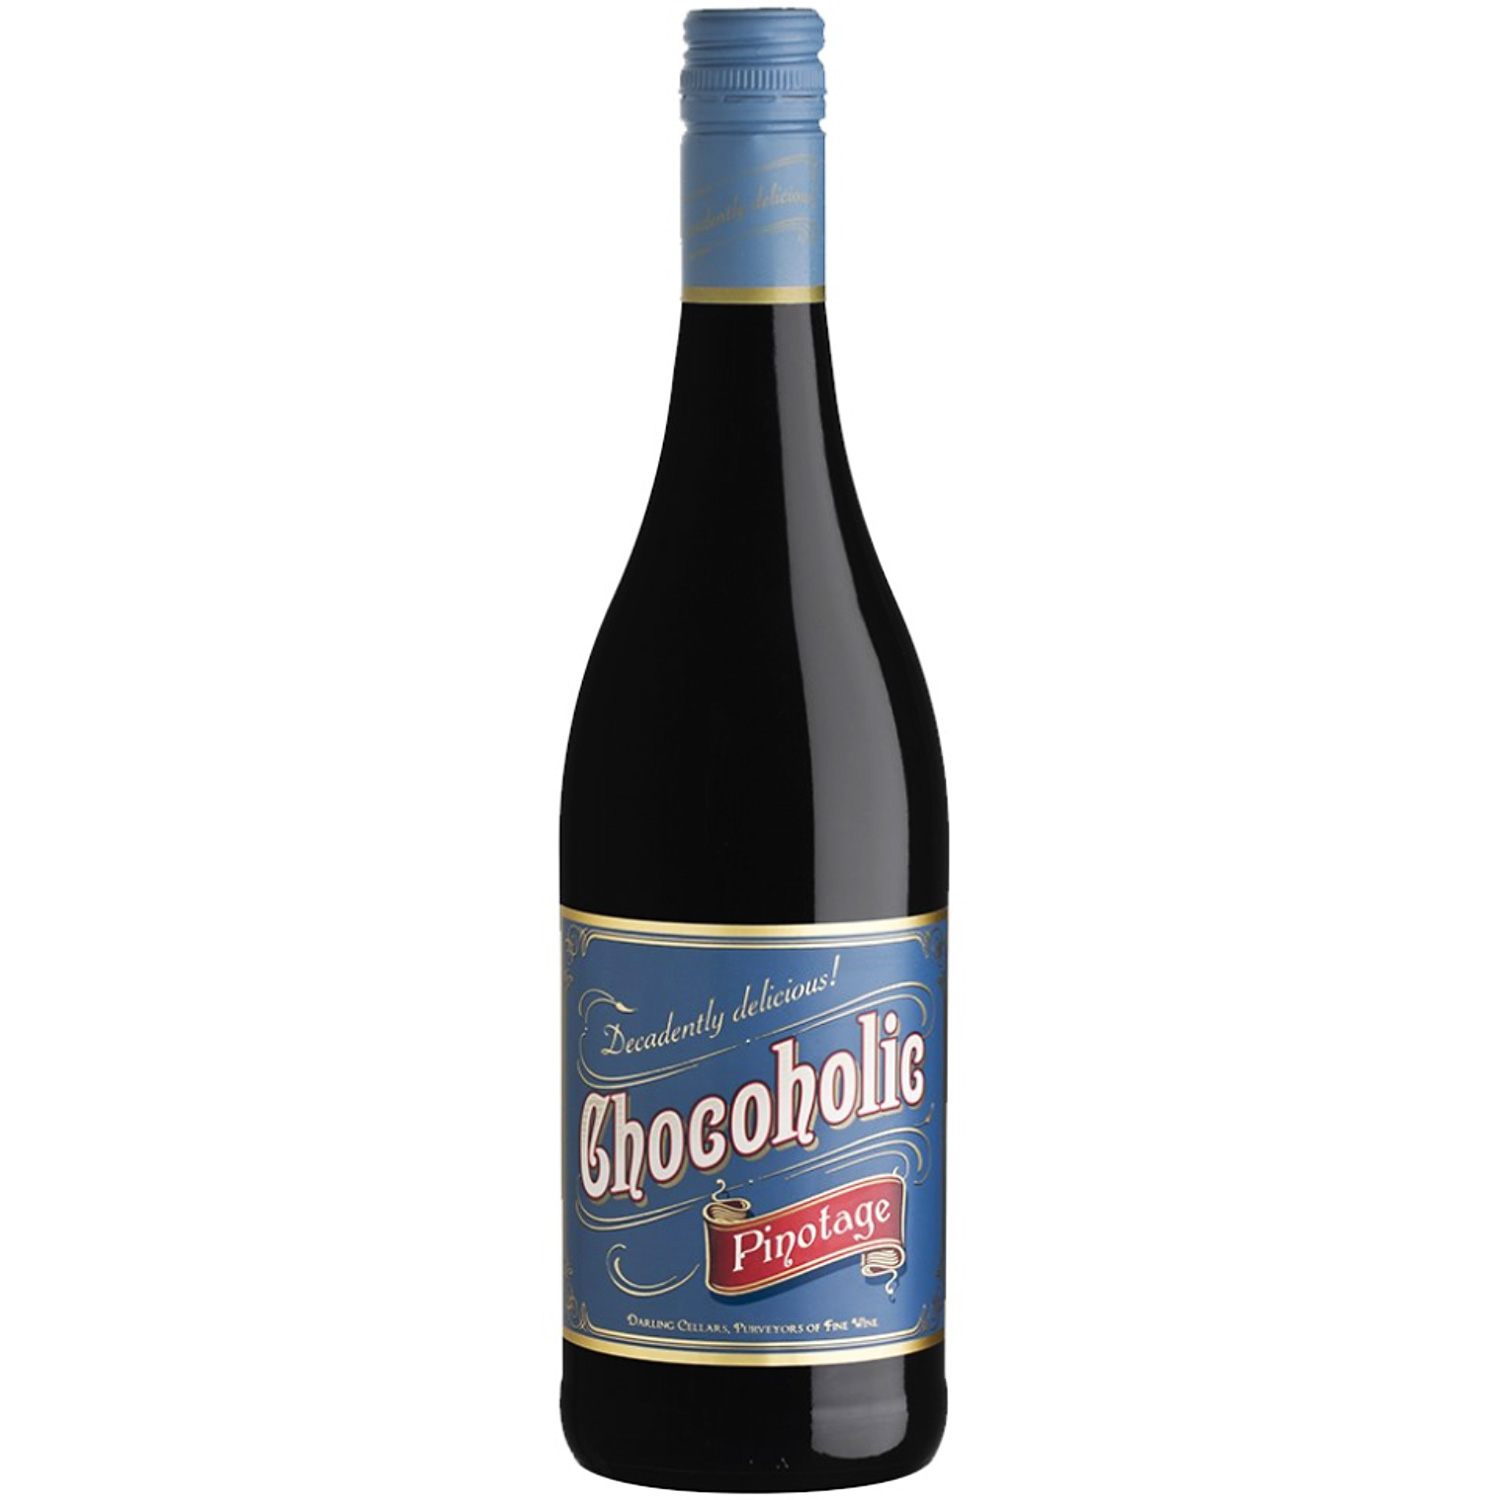 Darling Cellars Chocoholic Pinotage 2022 - Rotwein Südafrika hier kaufen